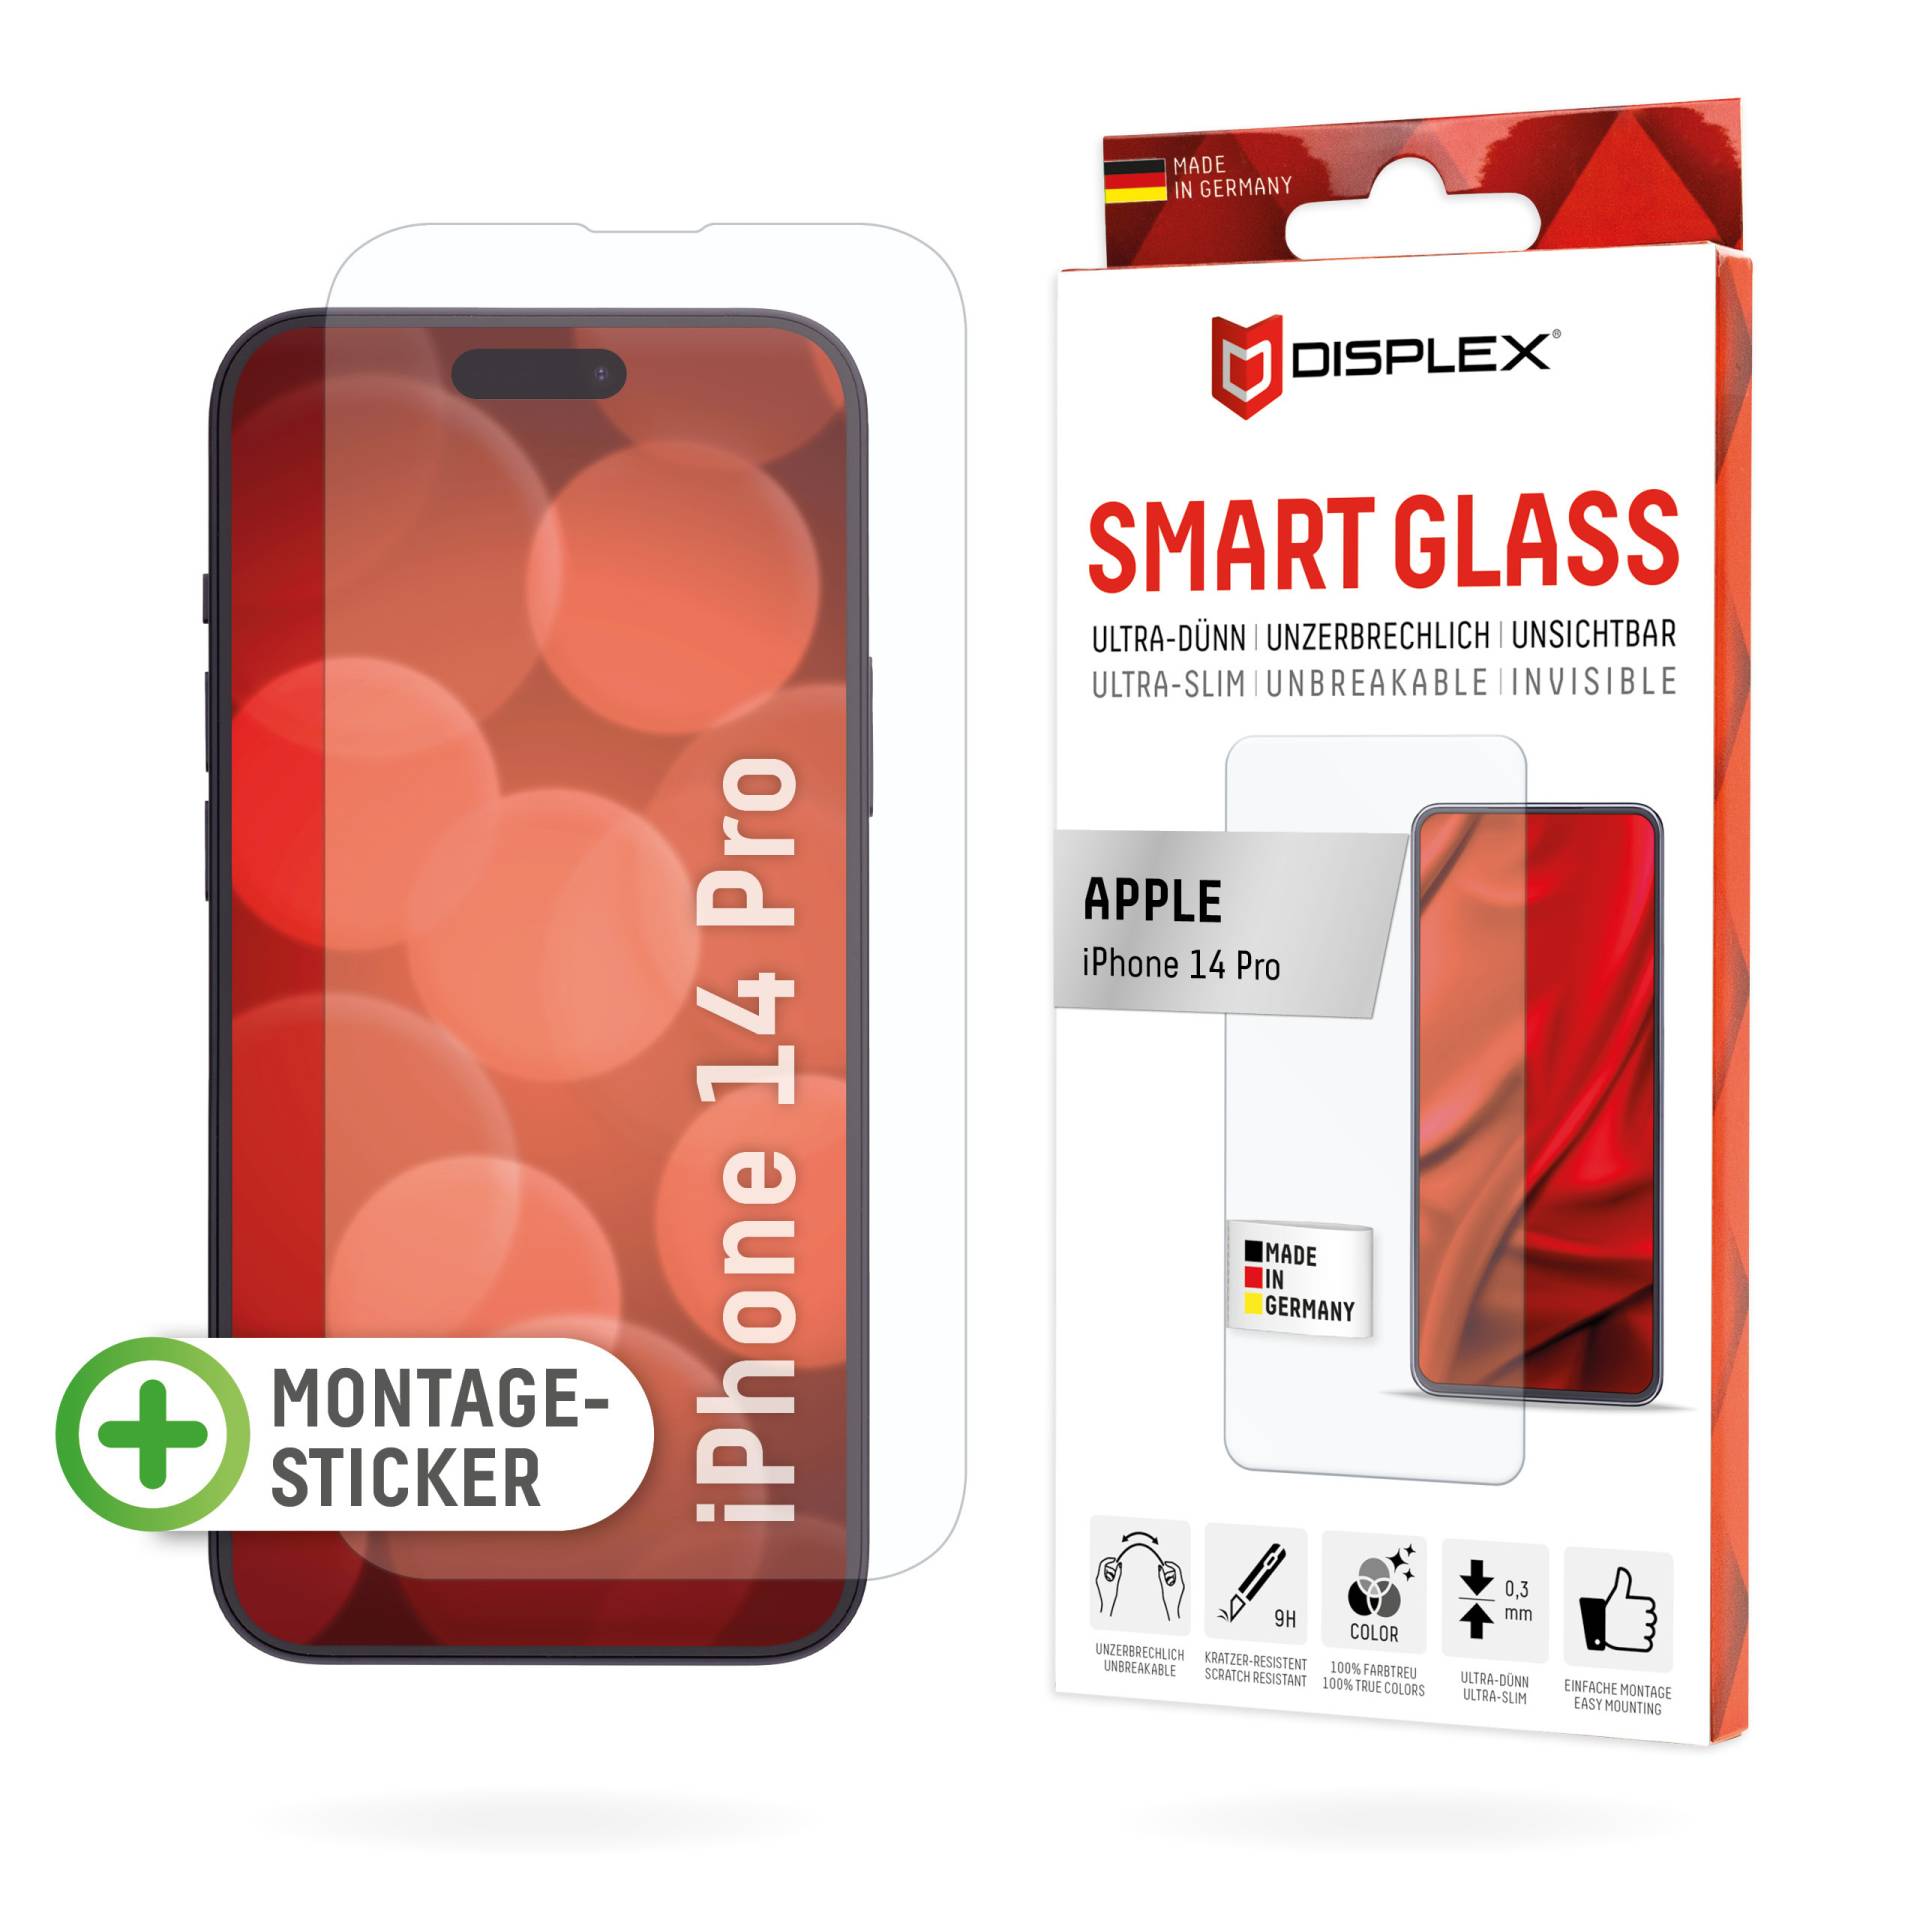 DISPLEX Smart Glass (9H) für Apple iPhone 14 Pro, Montagesticker, unzerbrechlich, ultra-dünn, unsichtbar von Displex